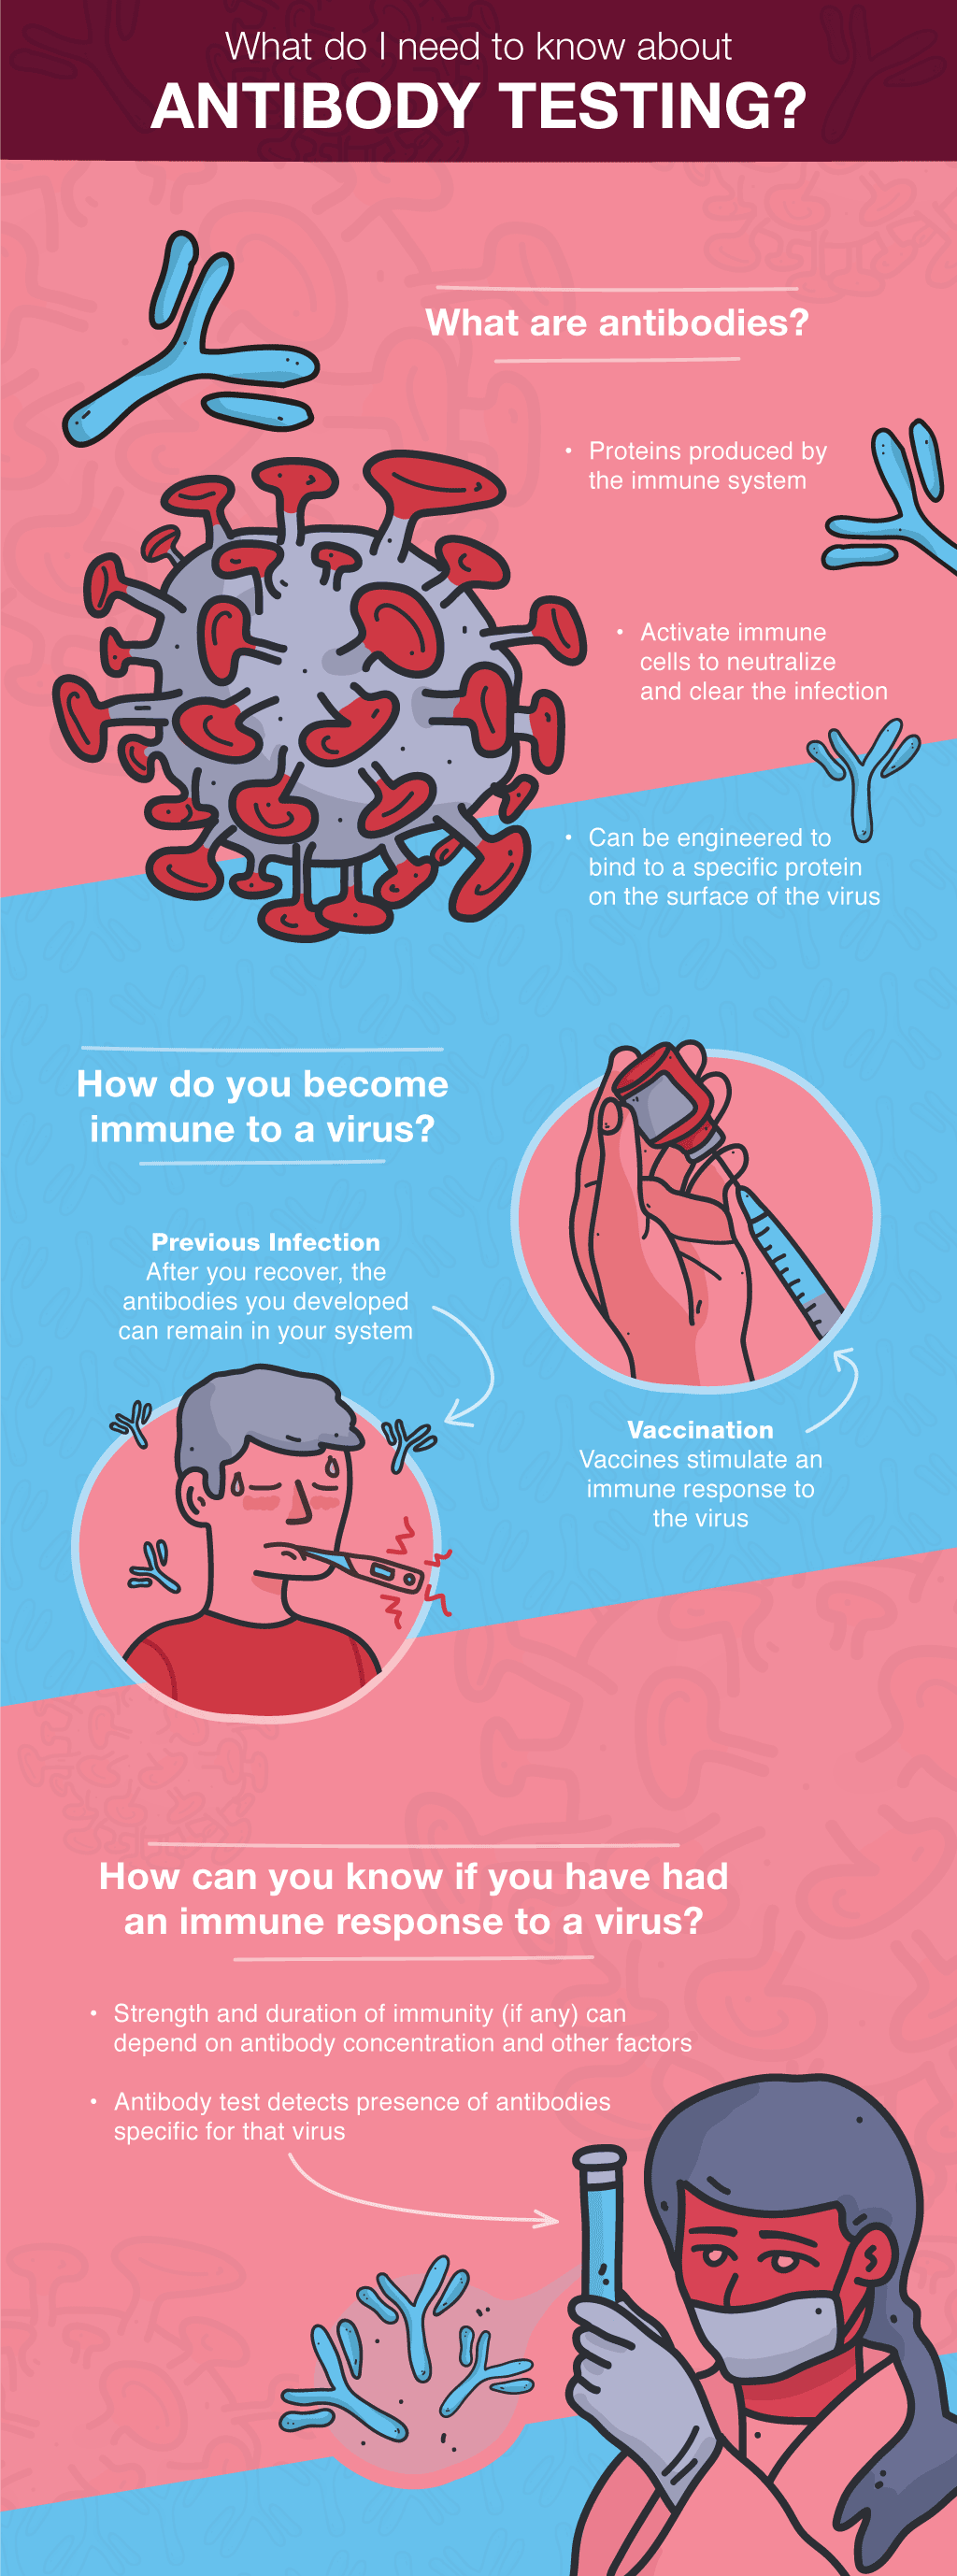 Infographic describing an immune response to a virus.